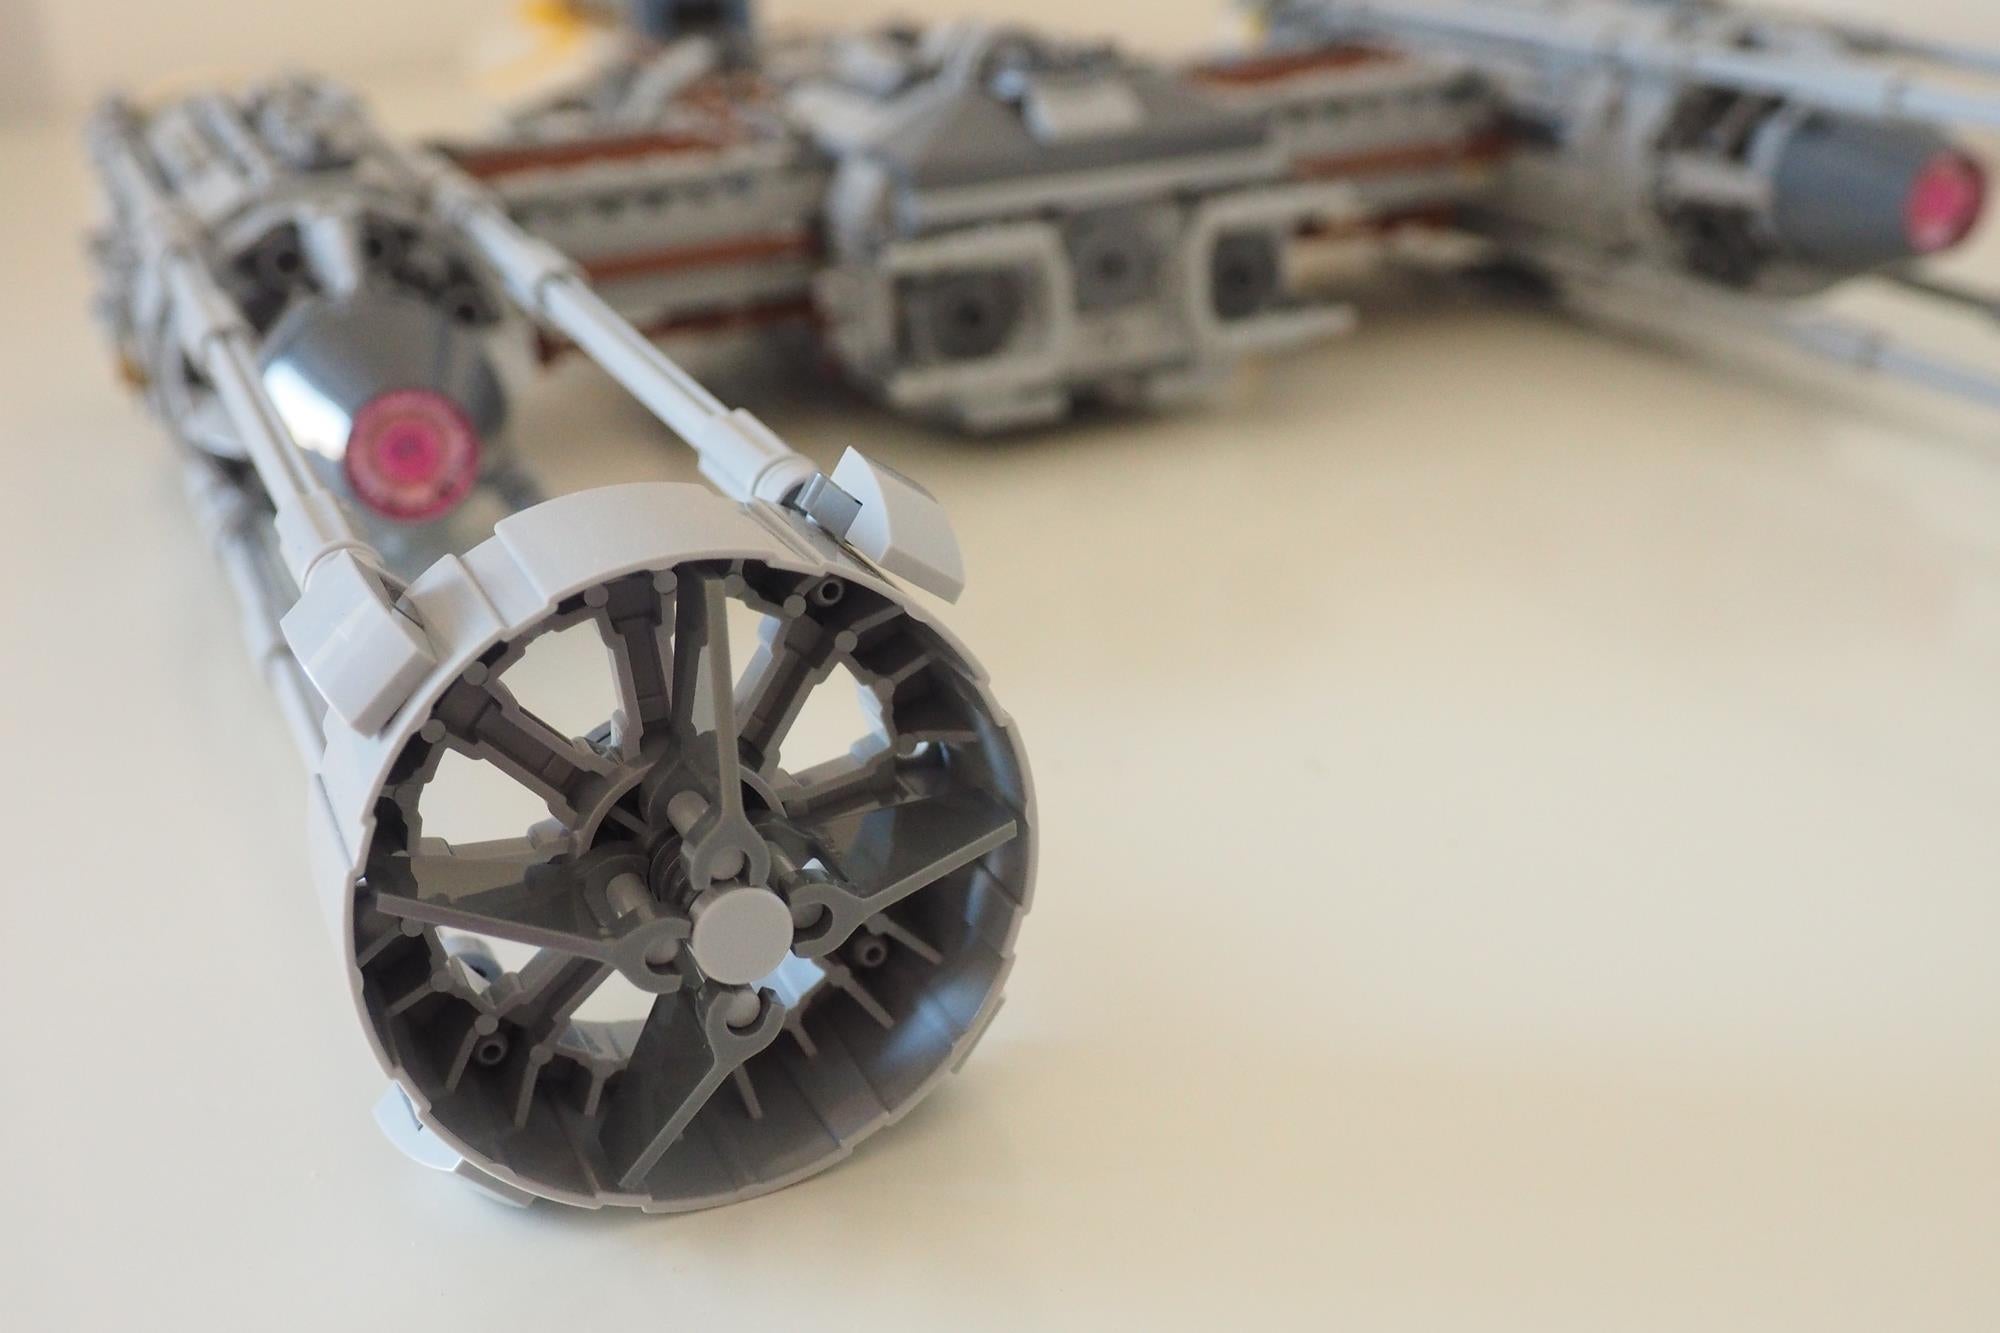 LEGO Star Wars UCS Y-Wing model on displayClose-up of LEGO Star Wars Y-Wing Starfighter model.